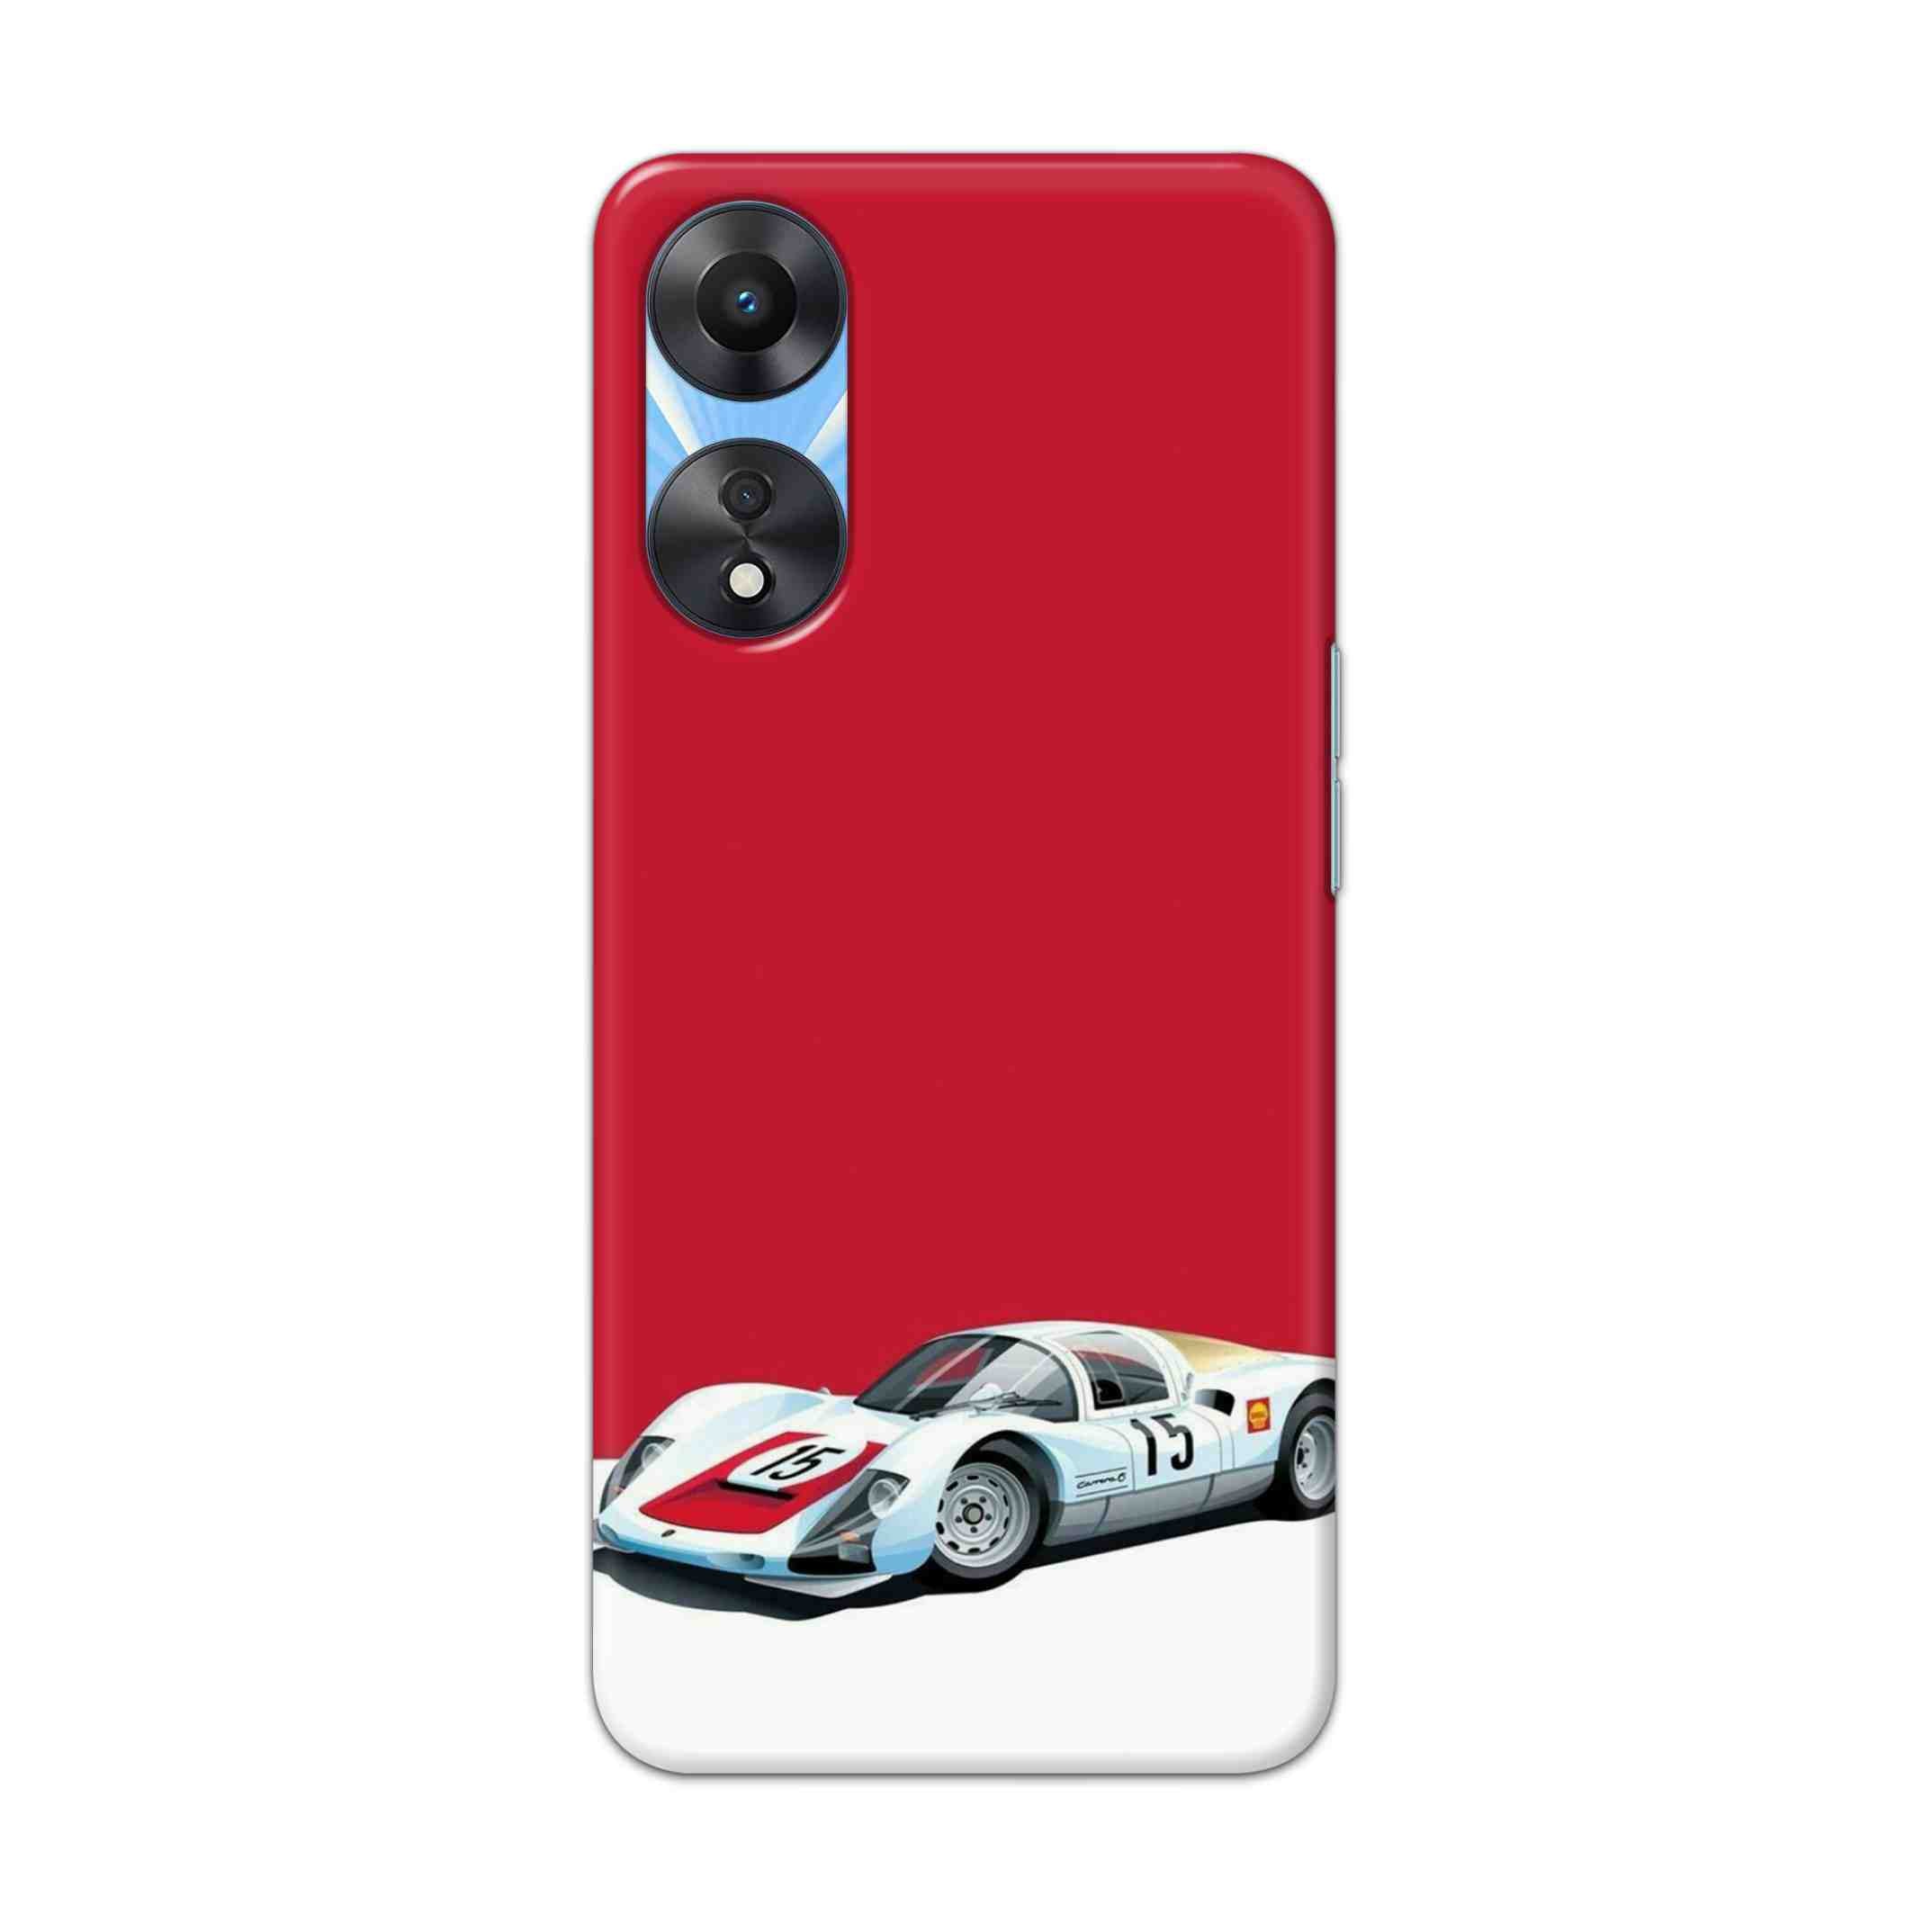 Buy Ferrari F15 Hard Back Mobile Phone Case Cover For OPPO A78 Online